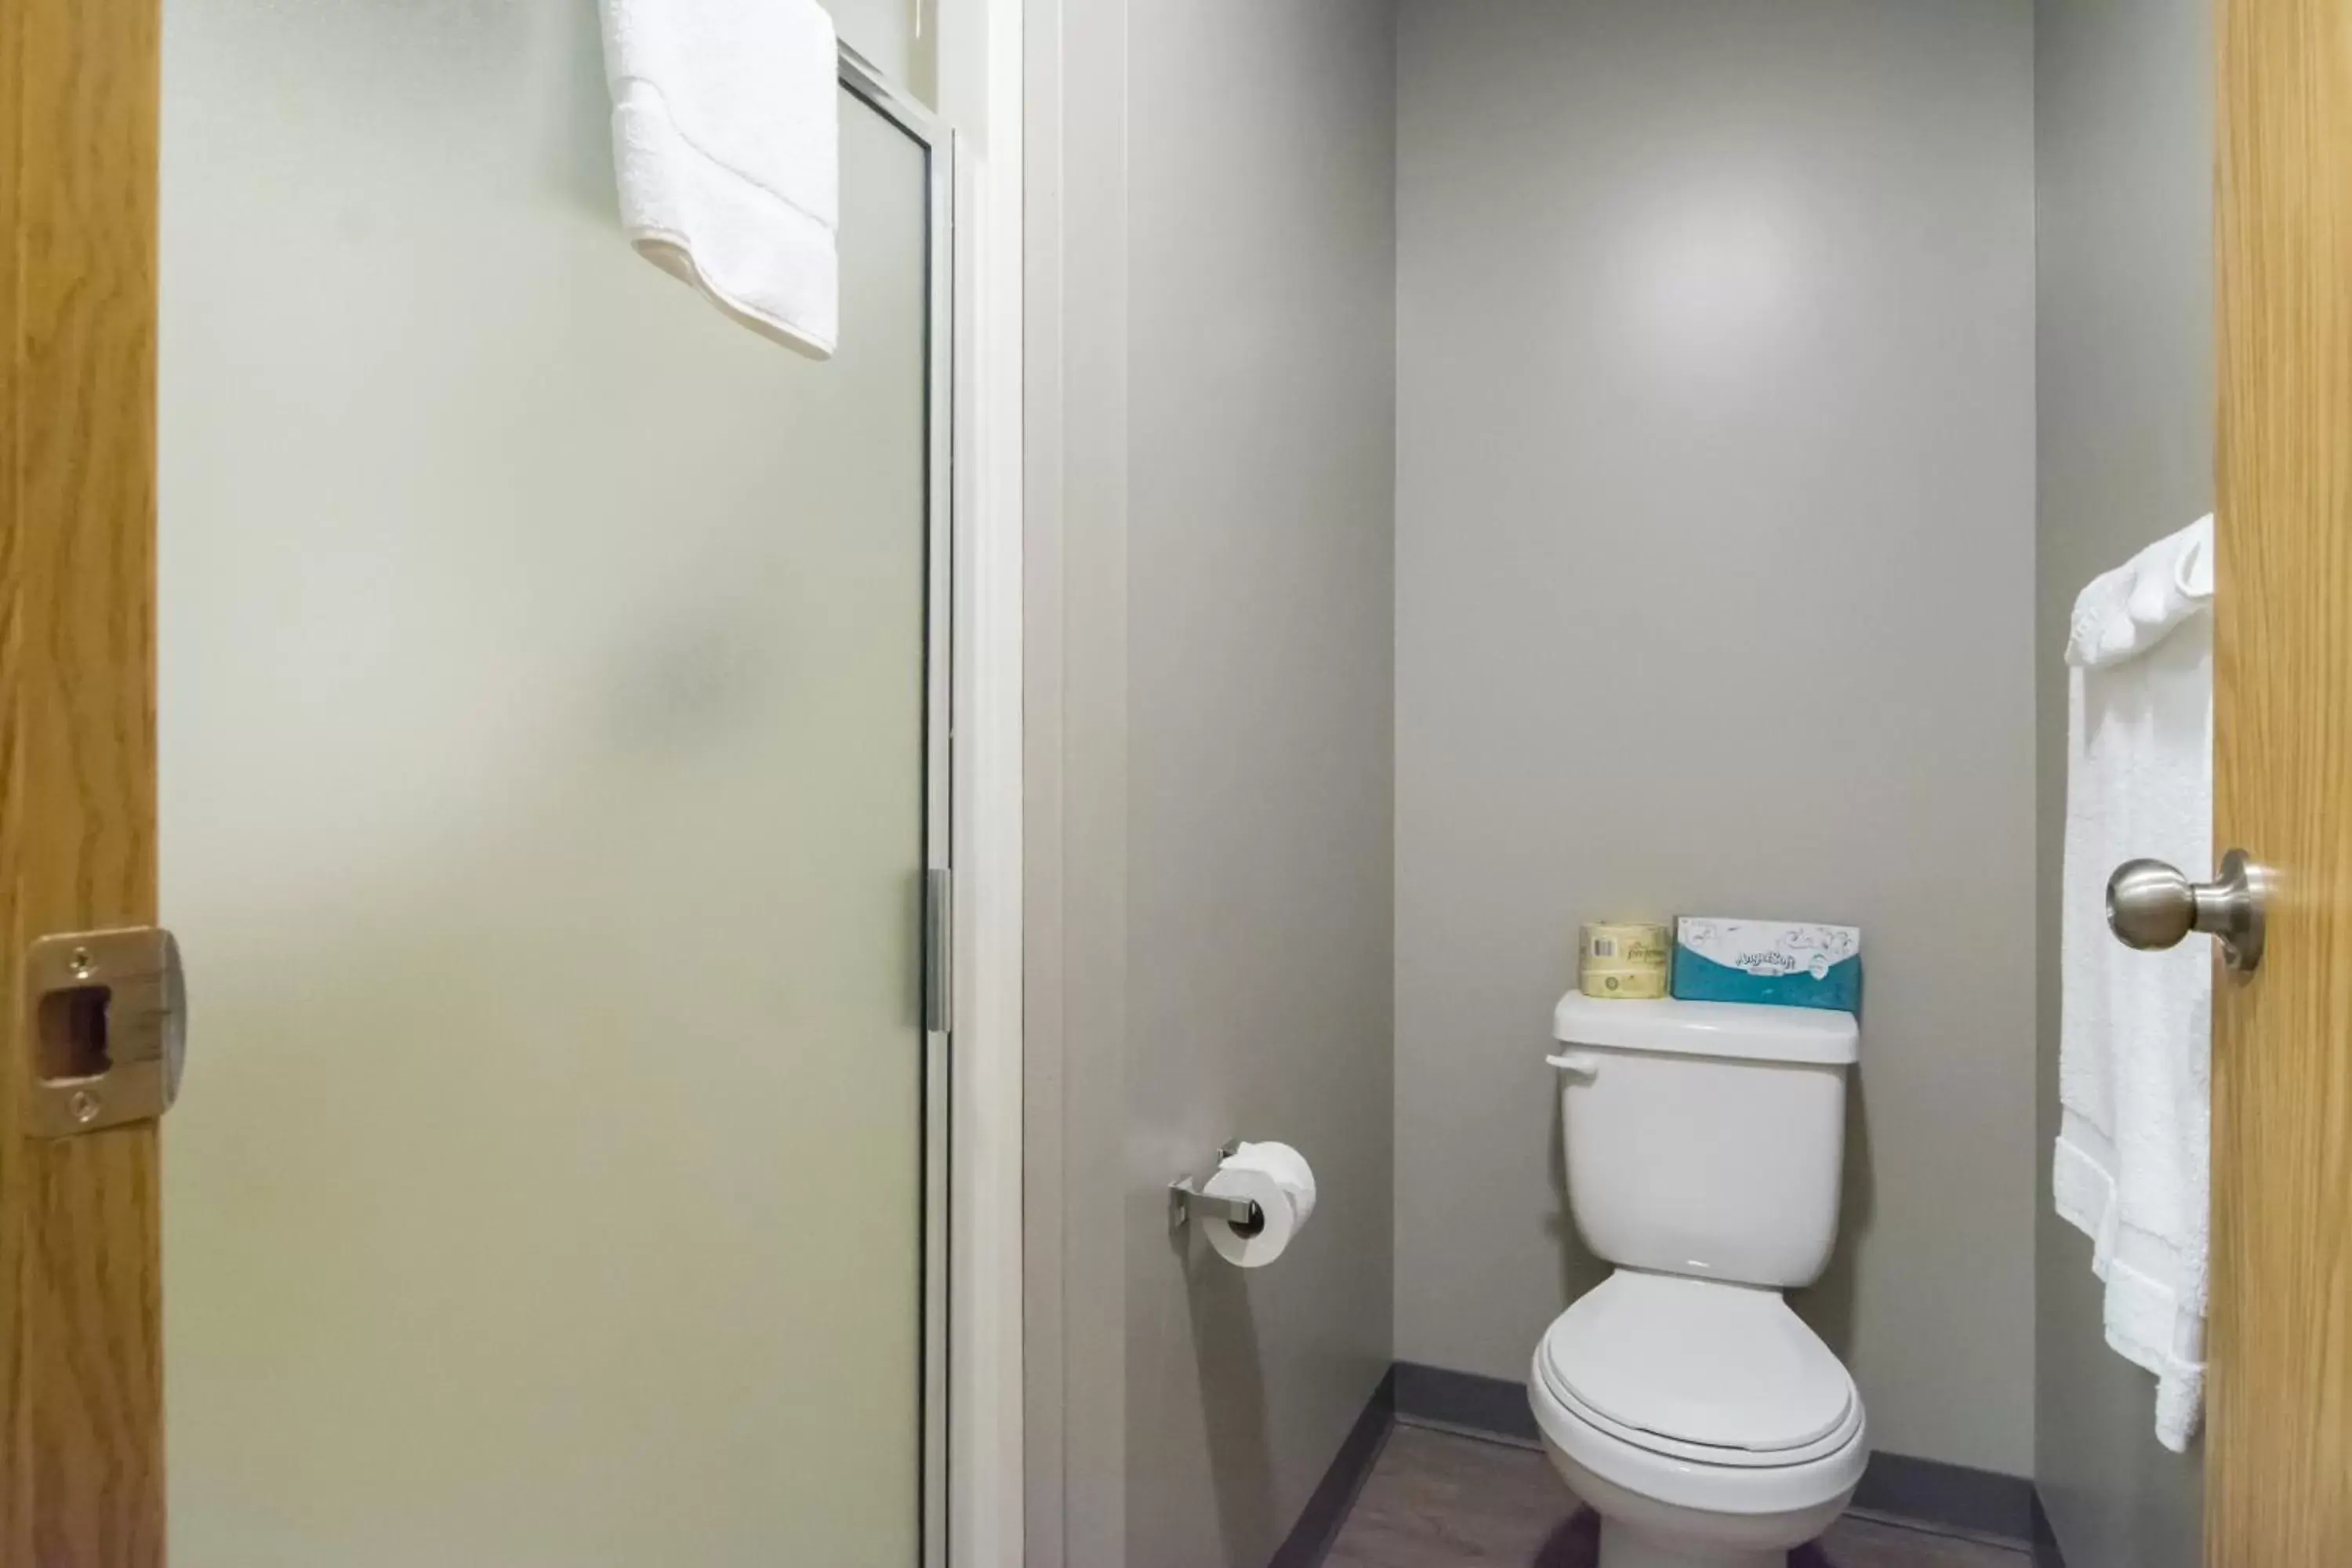 Bathroom in Motel 6-Saanichton, BC - Victoria Airport